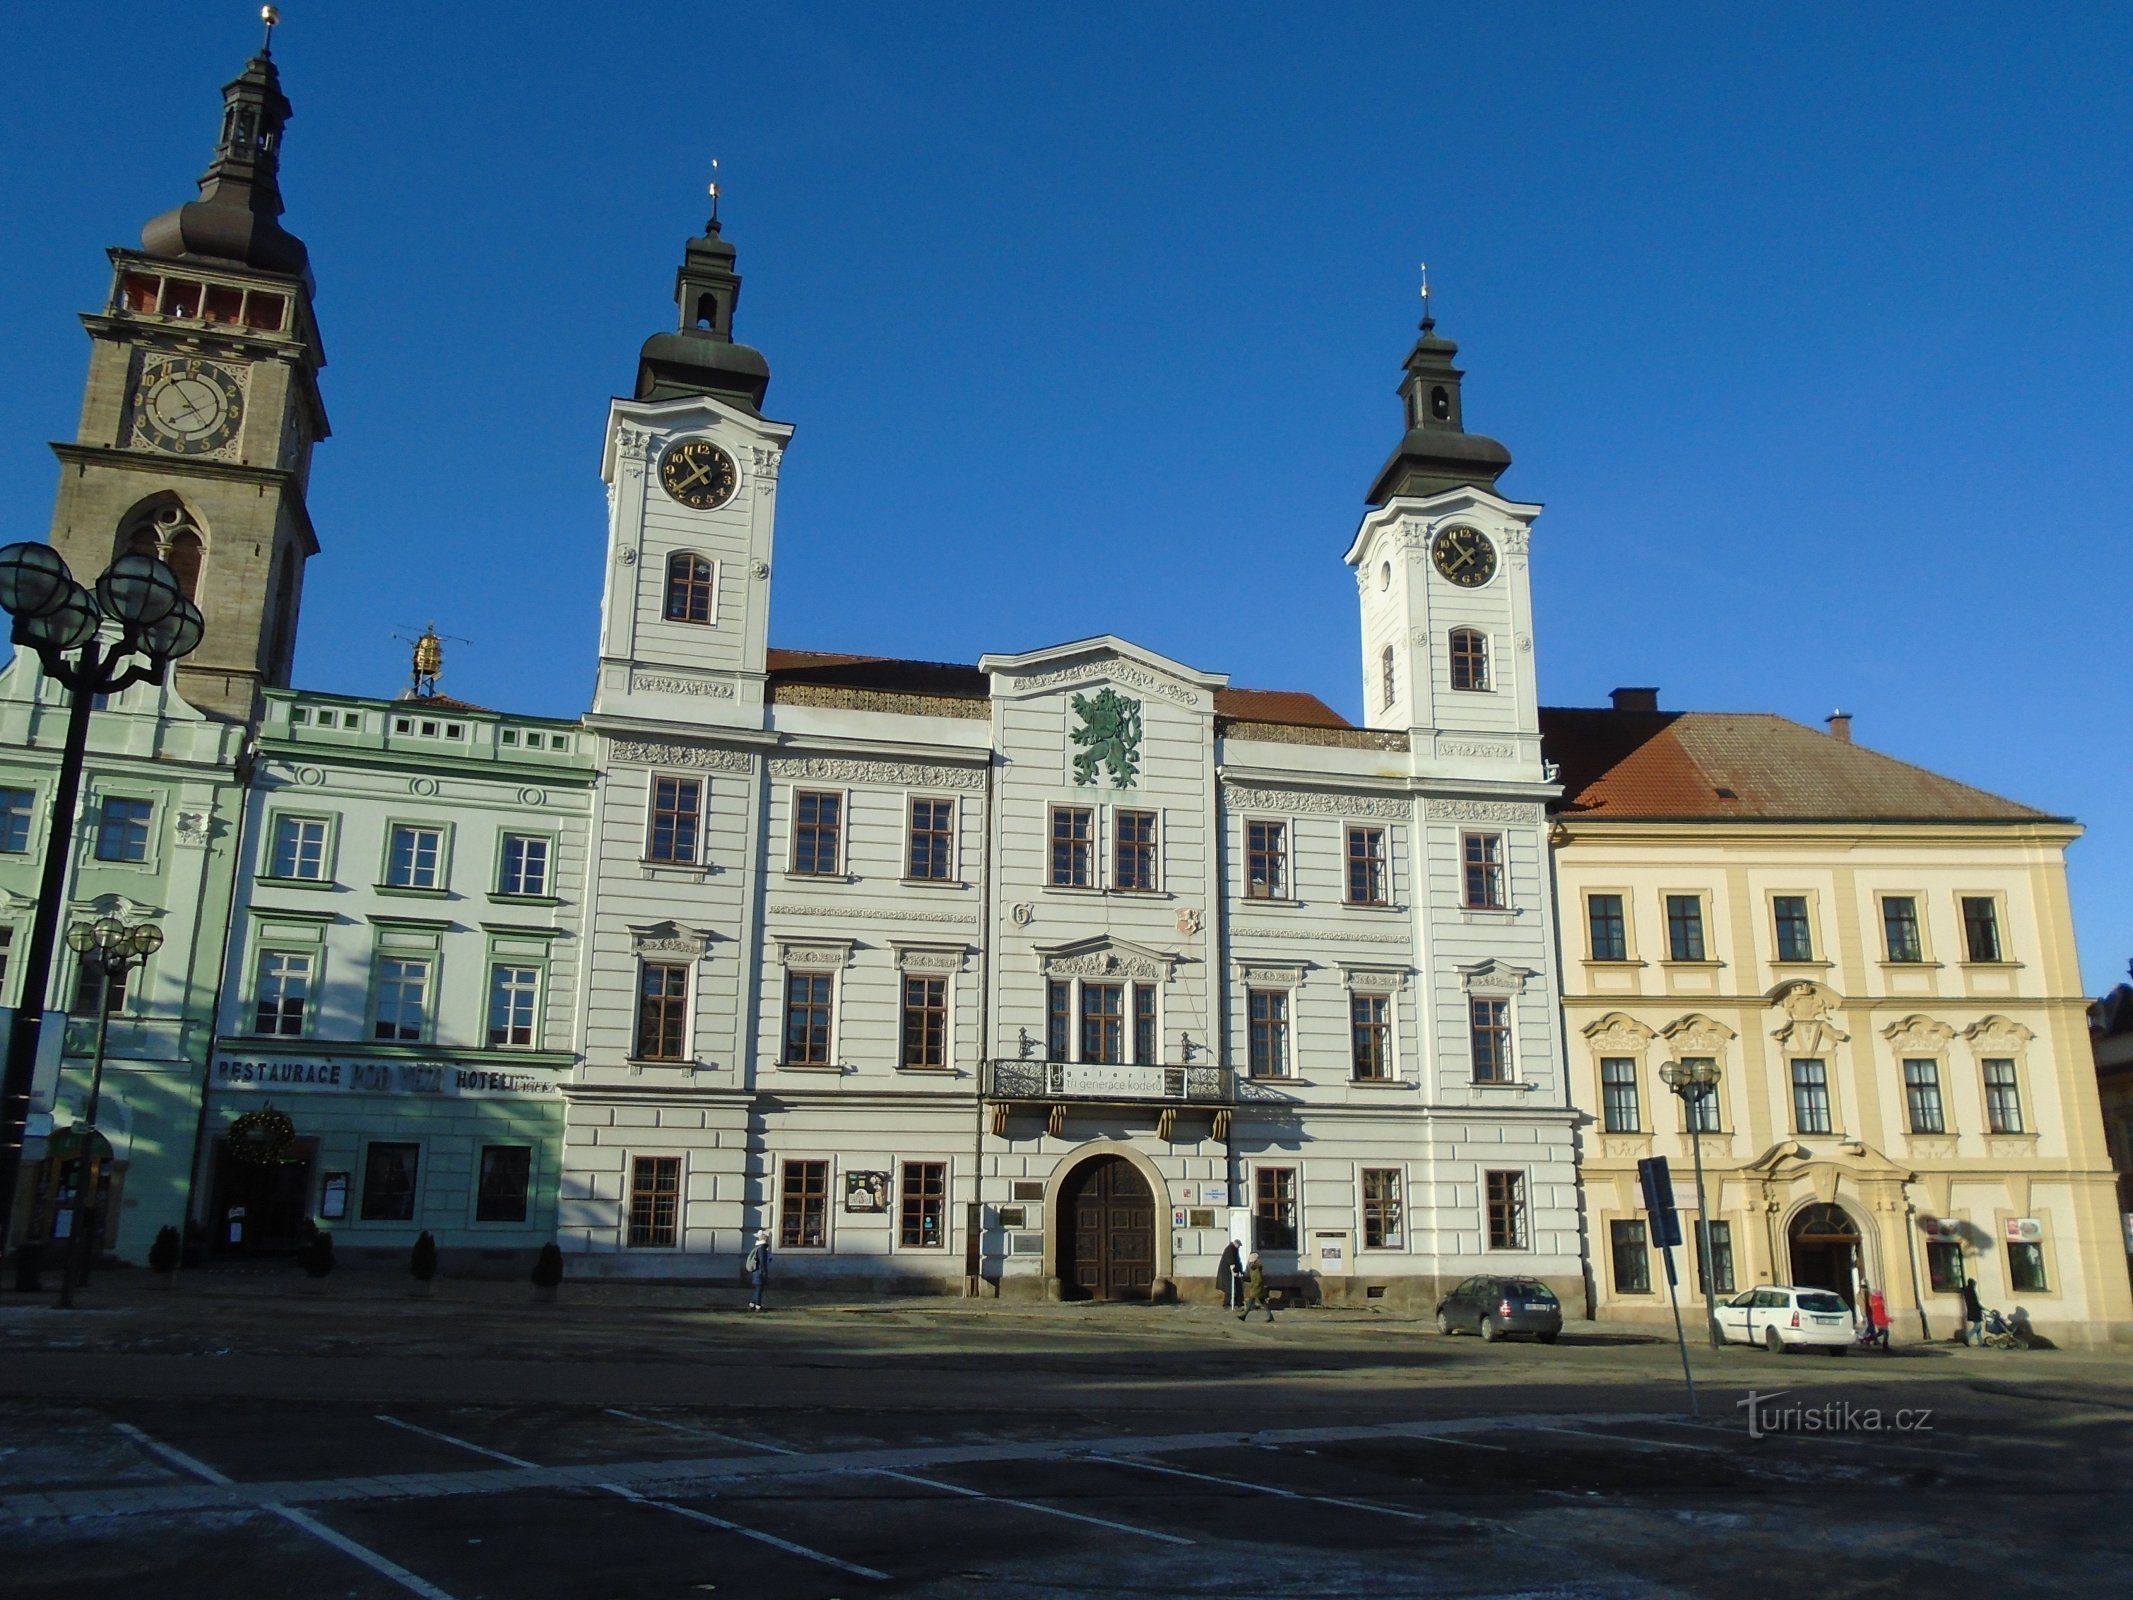 Velké náměstí No. 1 (Hradec Králové, 10.12.2017. lokakuuta XNUMX)